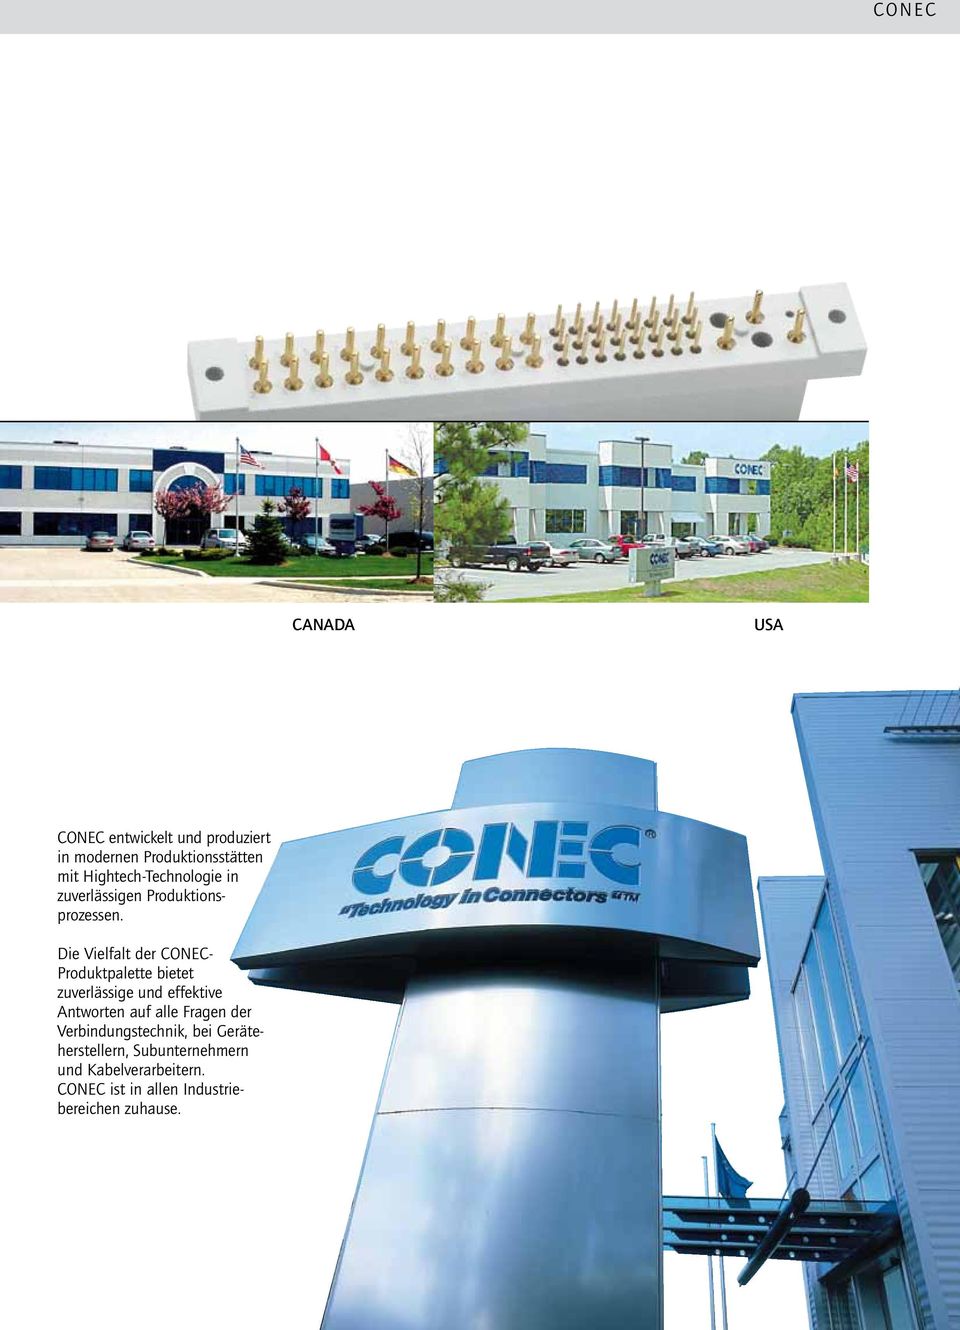 Die Vielfalt der CONEC- Produktpalette bietet zuver lässige und effektive Antworten auf alle